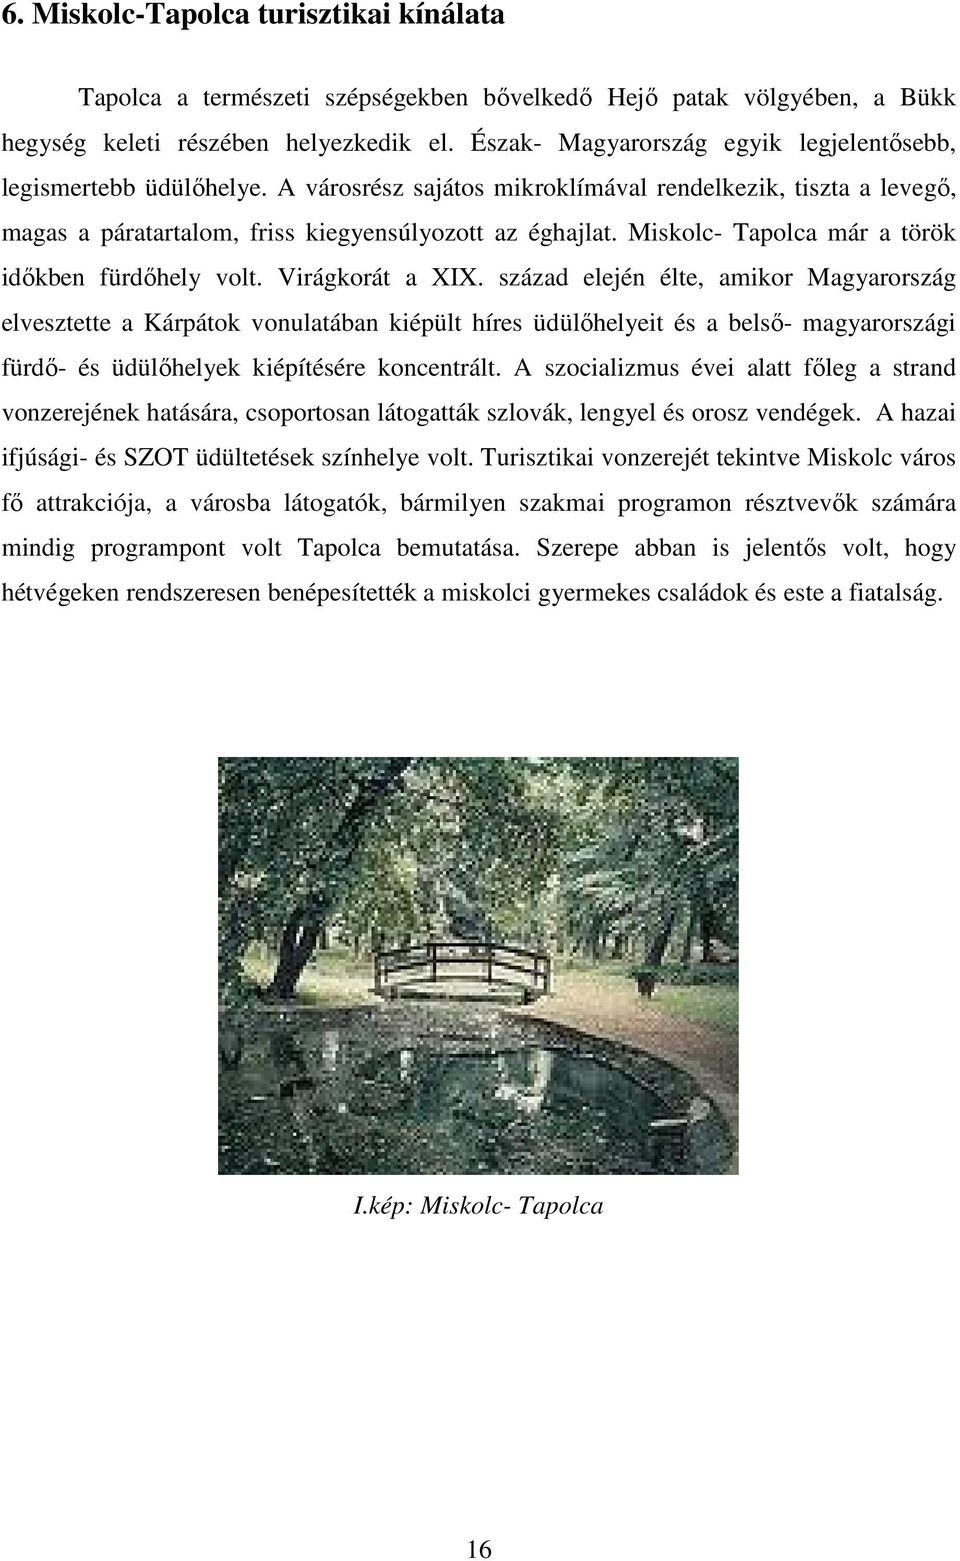 Miskolc- Tapolca már a török idıkben fürdıhely volt. Virágkorát a XIX.